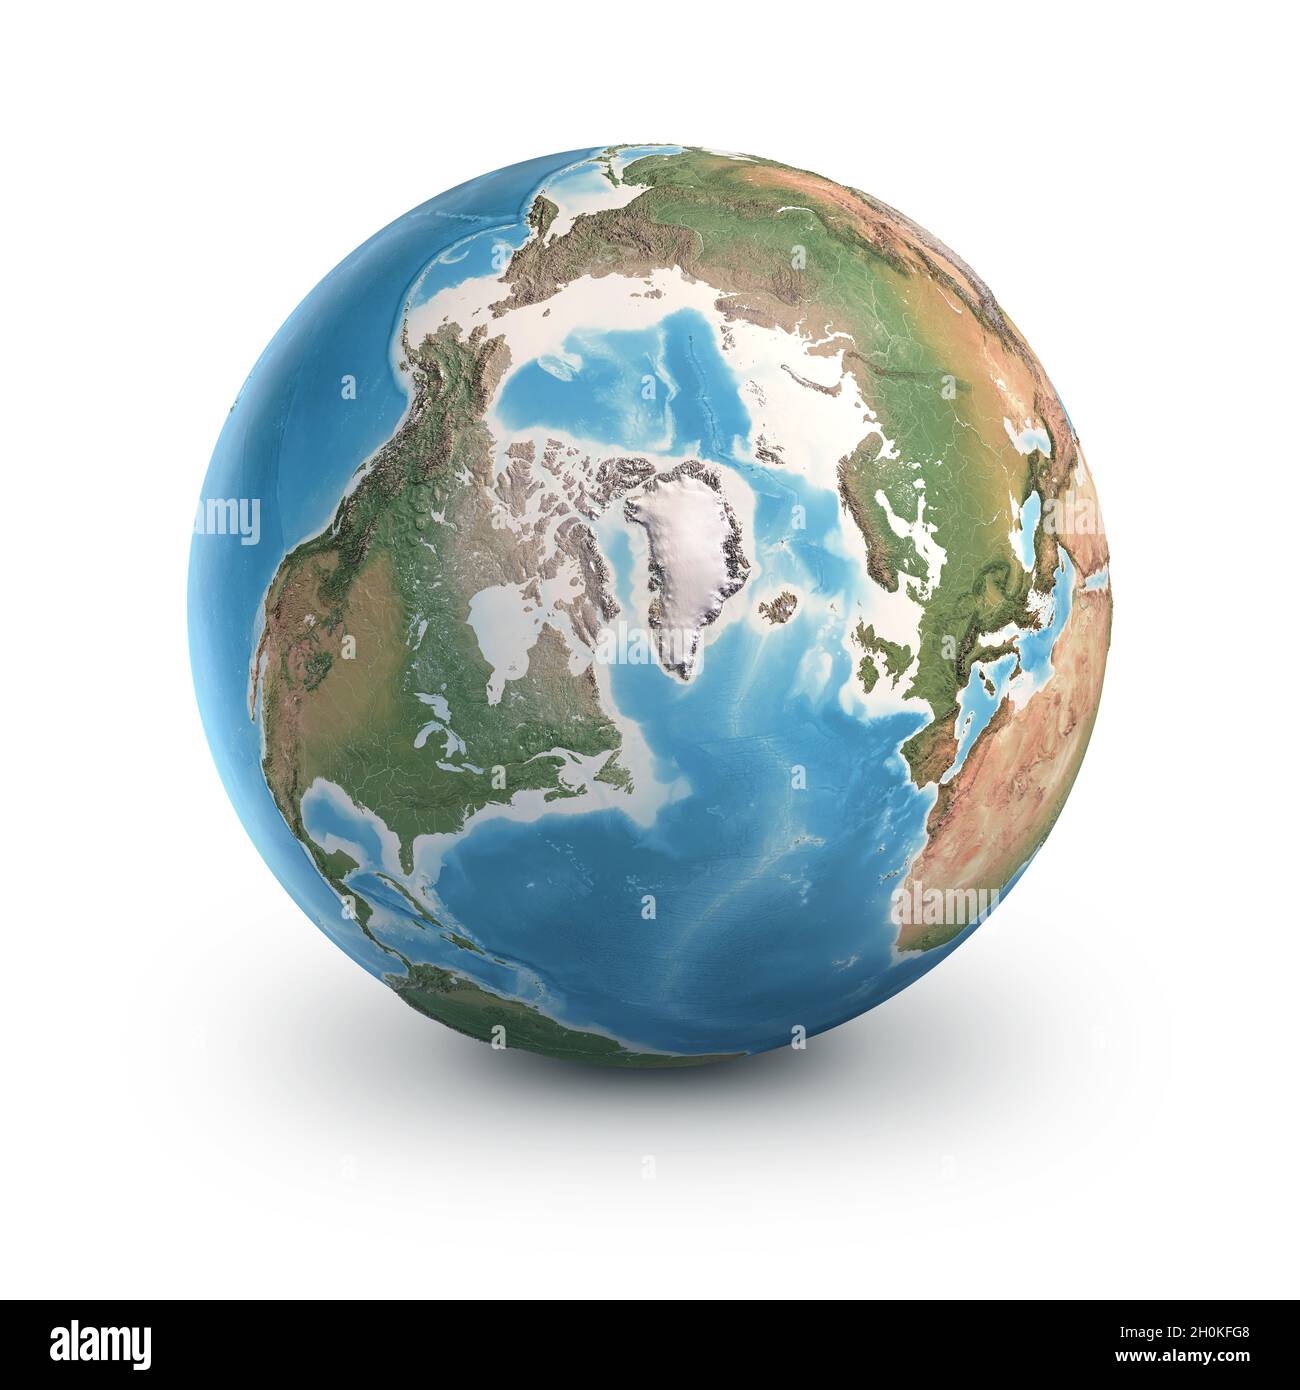 Planeta Tierra globo, aislado sobre blanco. Geografía del mundo desde el espacio, centrada en el Polo Norte y Groenlandia. Elementos proporcionados por la NASA Foto de stock